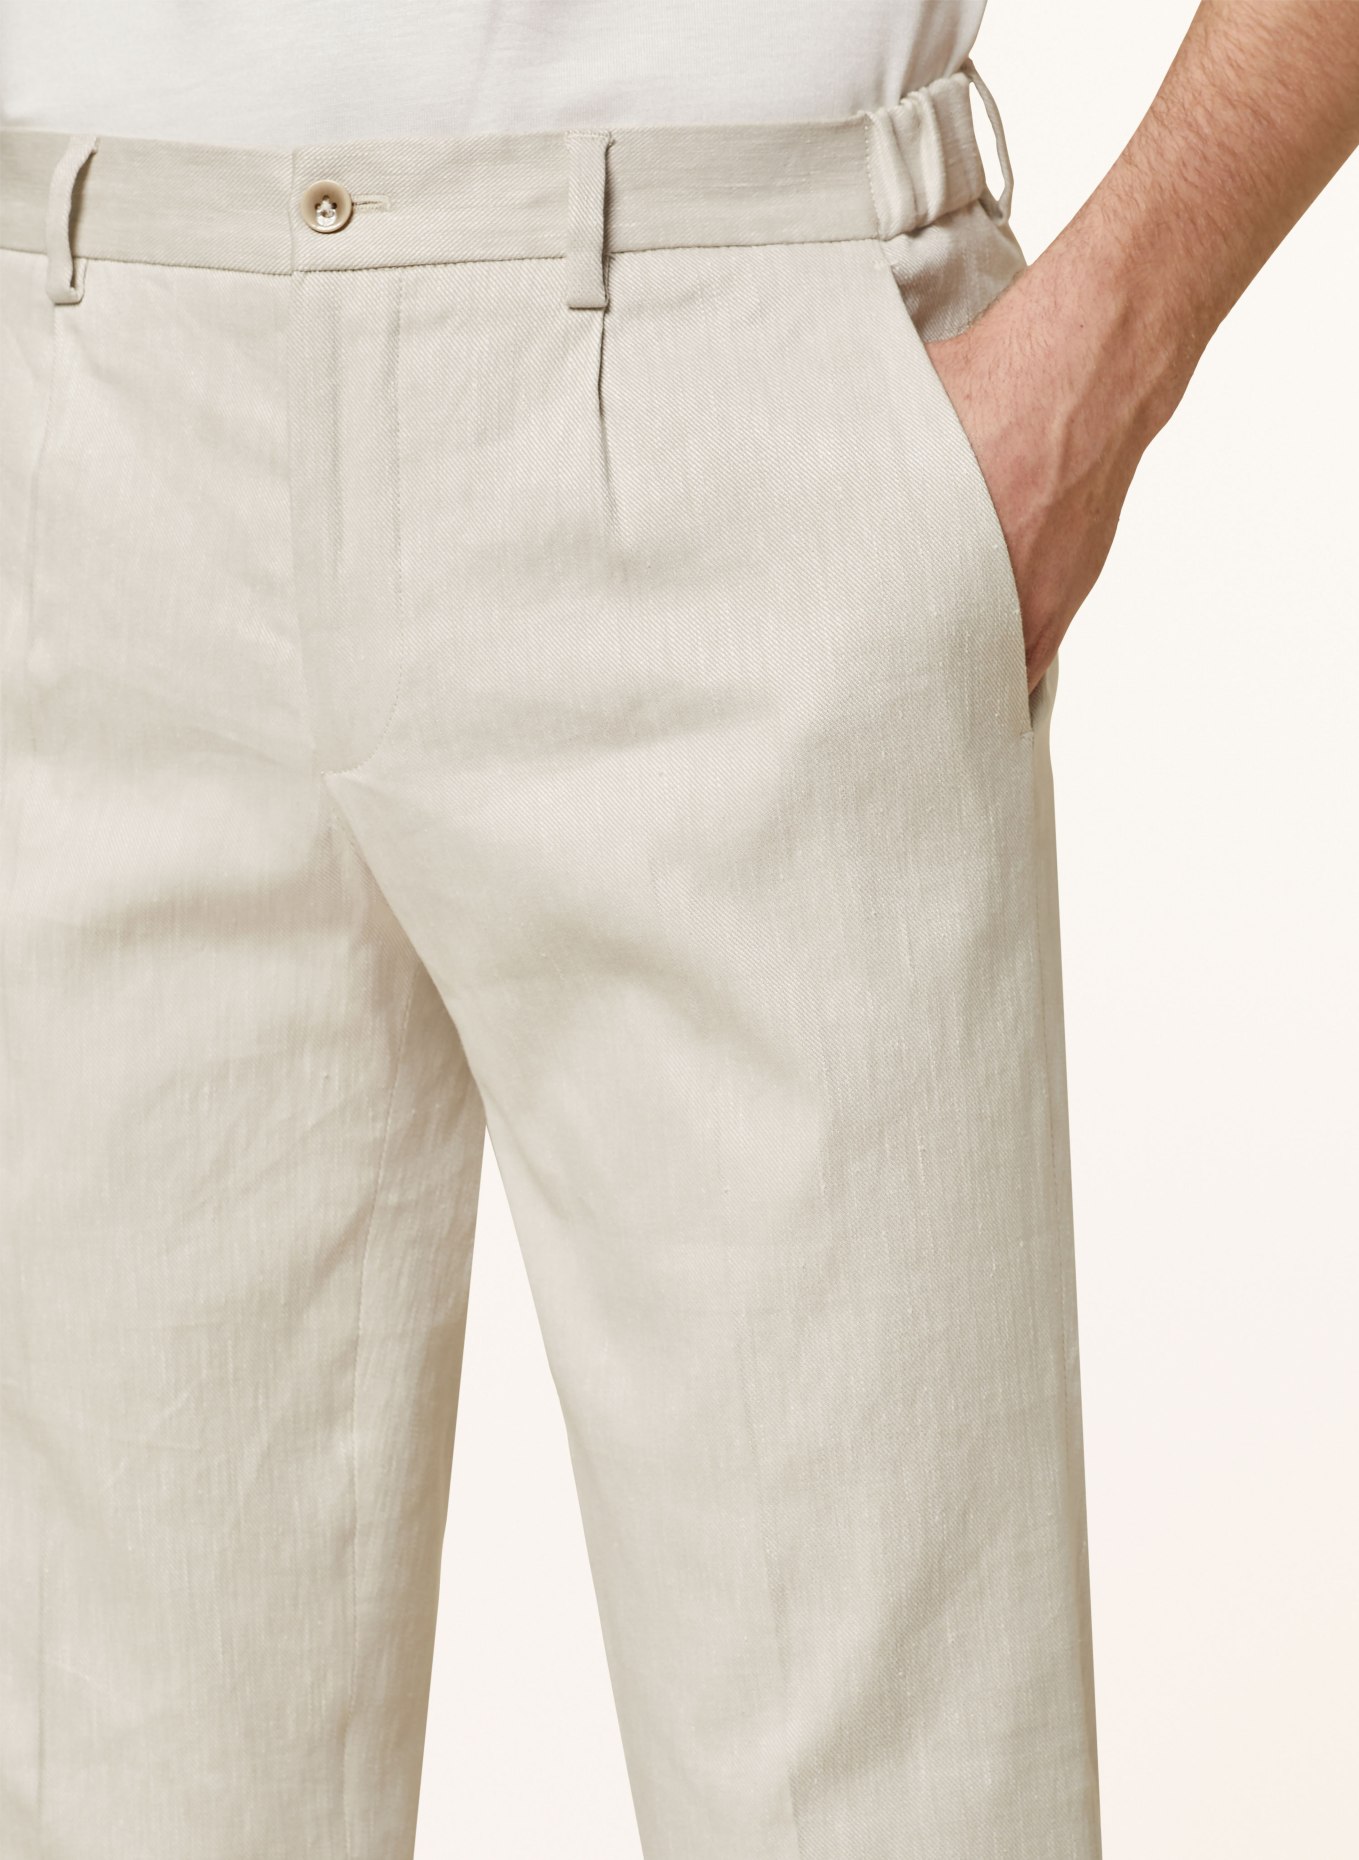 PAUL Suit trousers with linen, Color: 200 LIGHT BEIGE (Image 6)